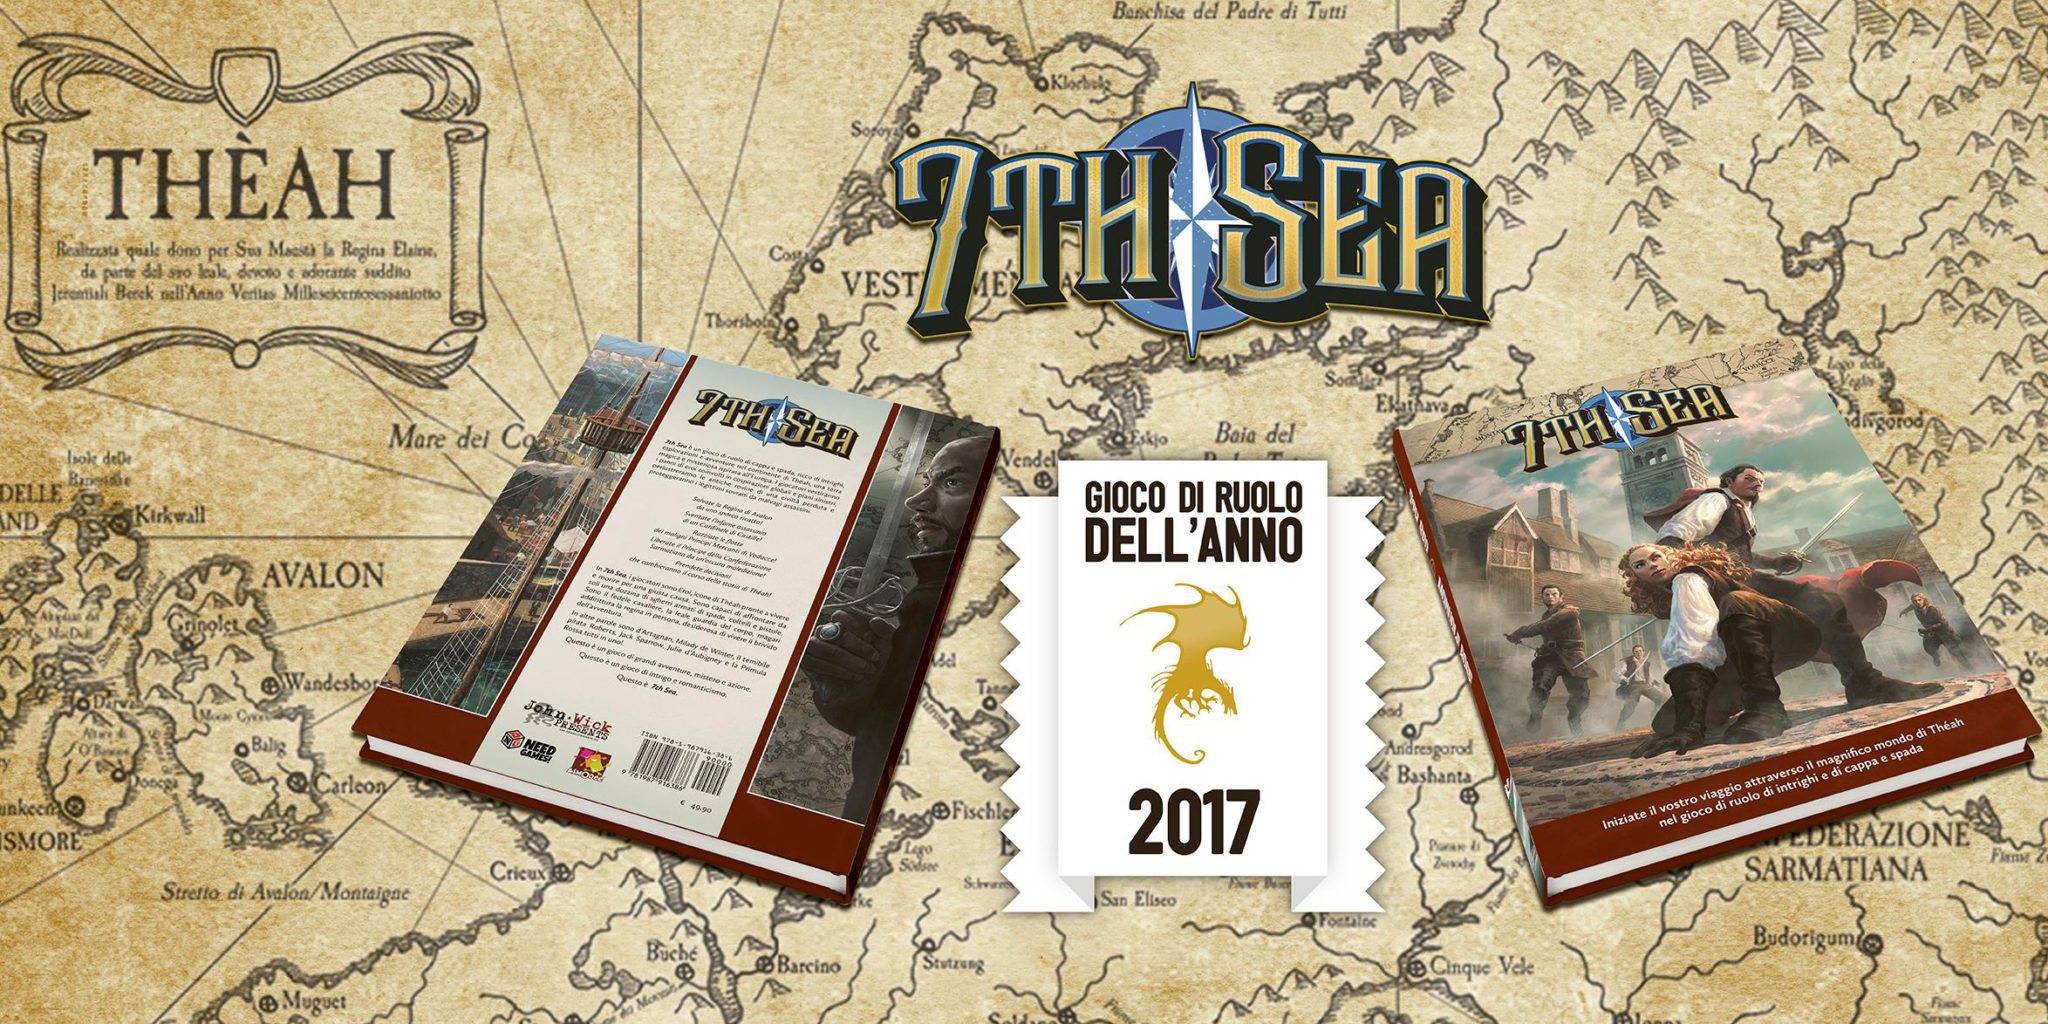 7th sea - Miglior gioco di ruolo 2017